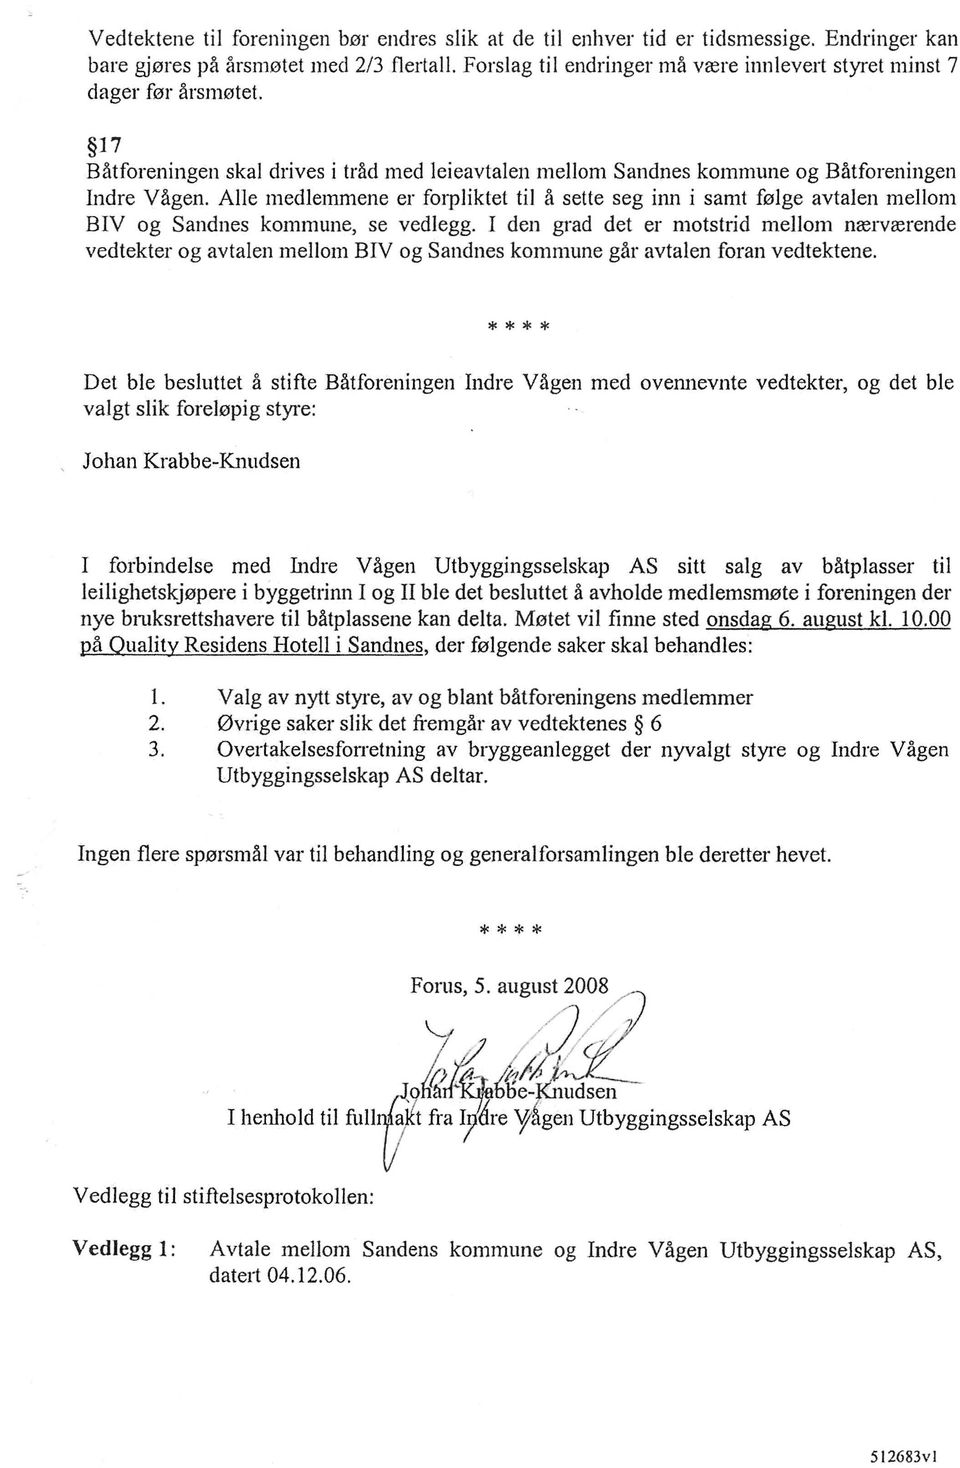 Alle medienmlene er forpliktet til a sette seg inn i samt folge avtalen mellom BIV og Sandnes kommune, se vedlegg.